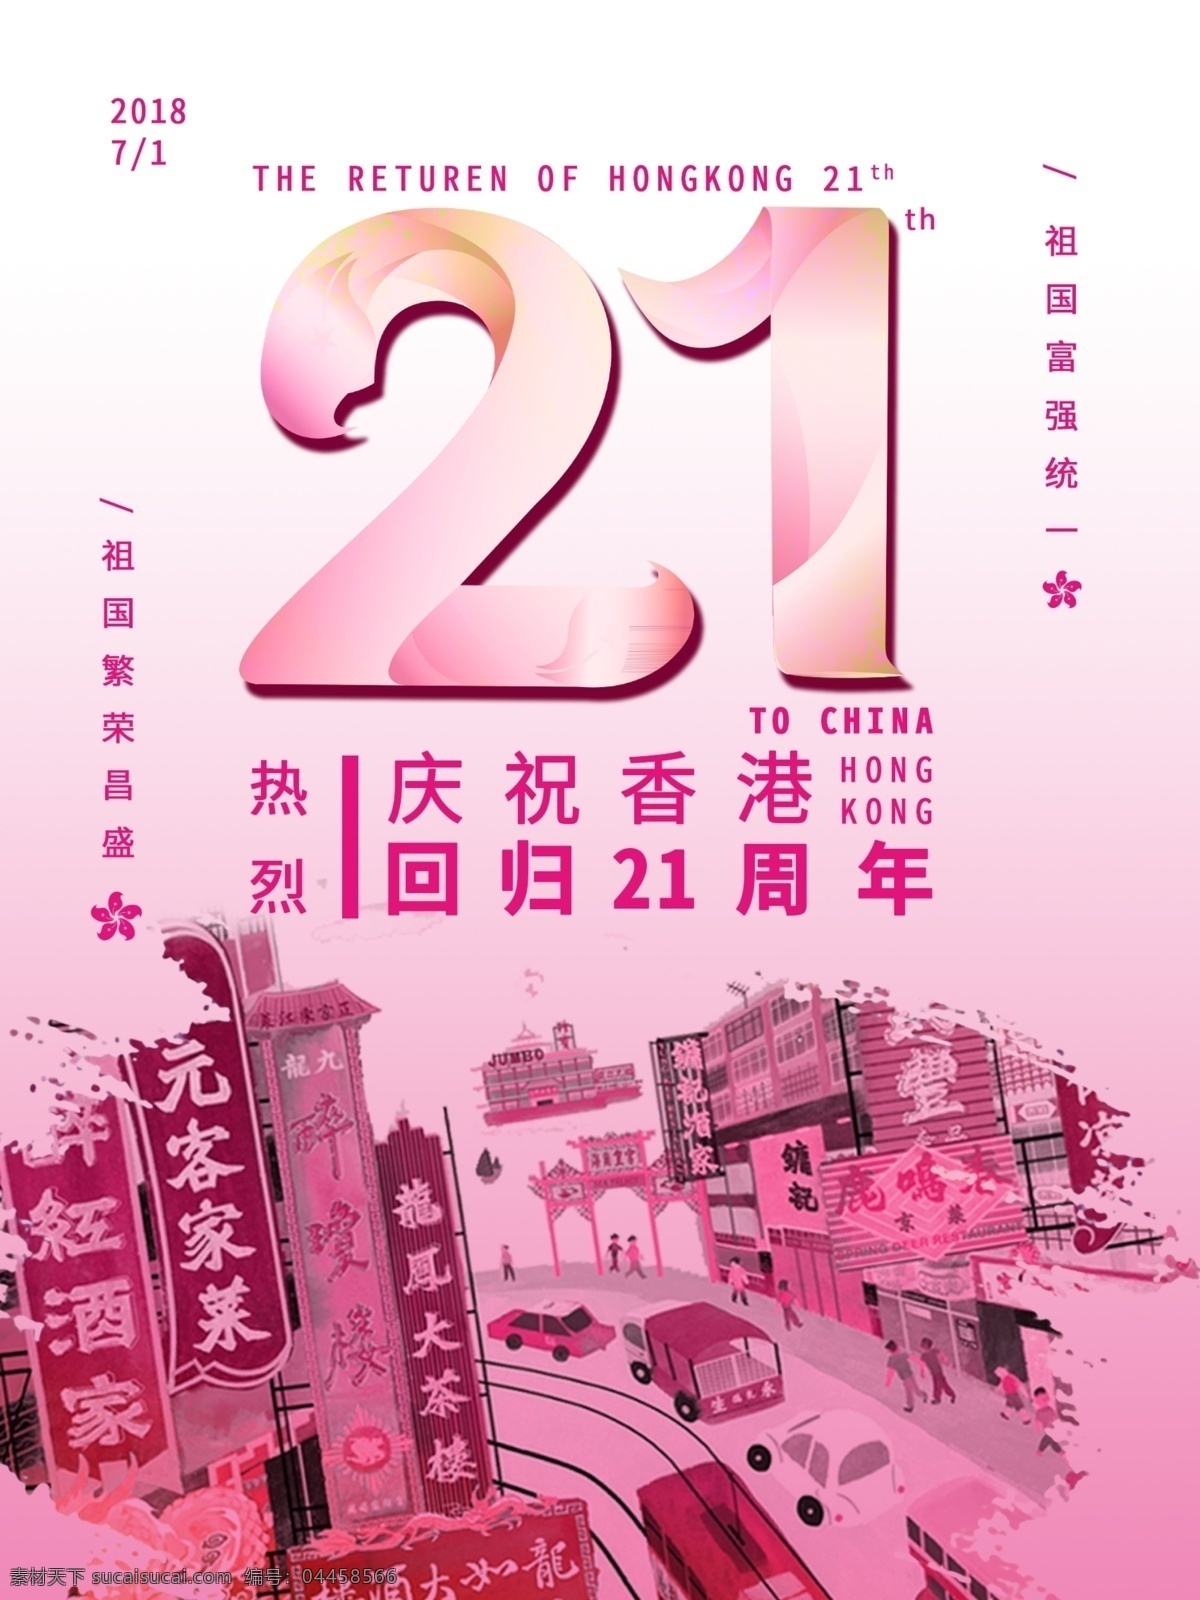 香港 回归 周年 创意 海报 香港回归 21周年 庆祝创意海报 字体设计